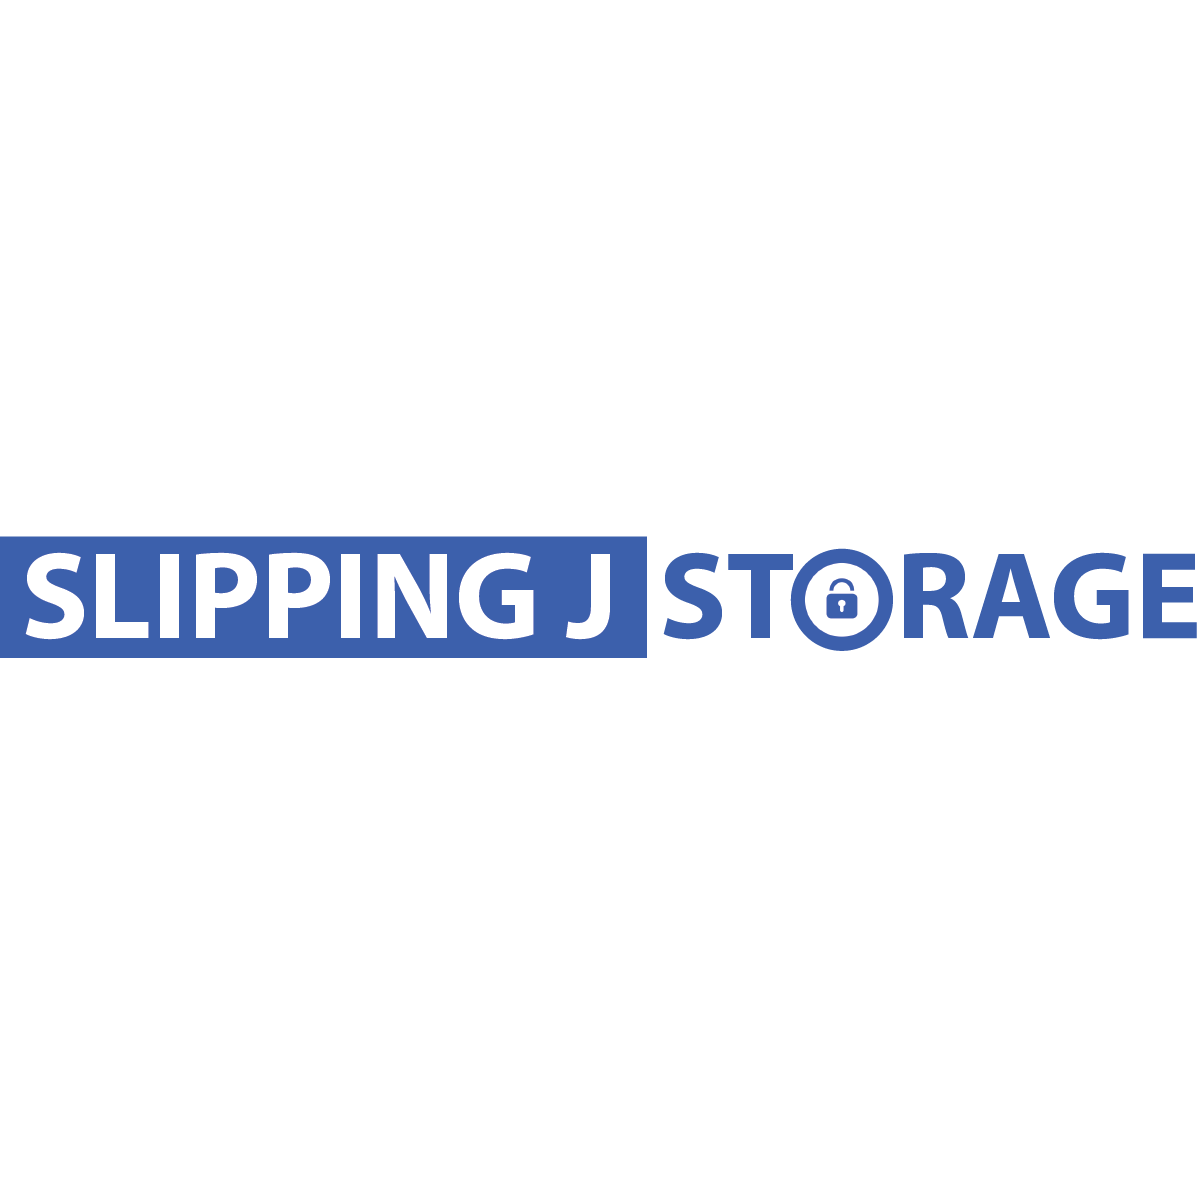 Slipping J Storage